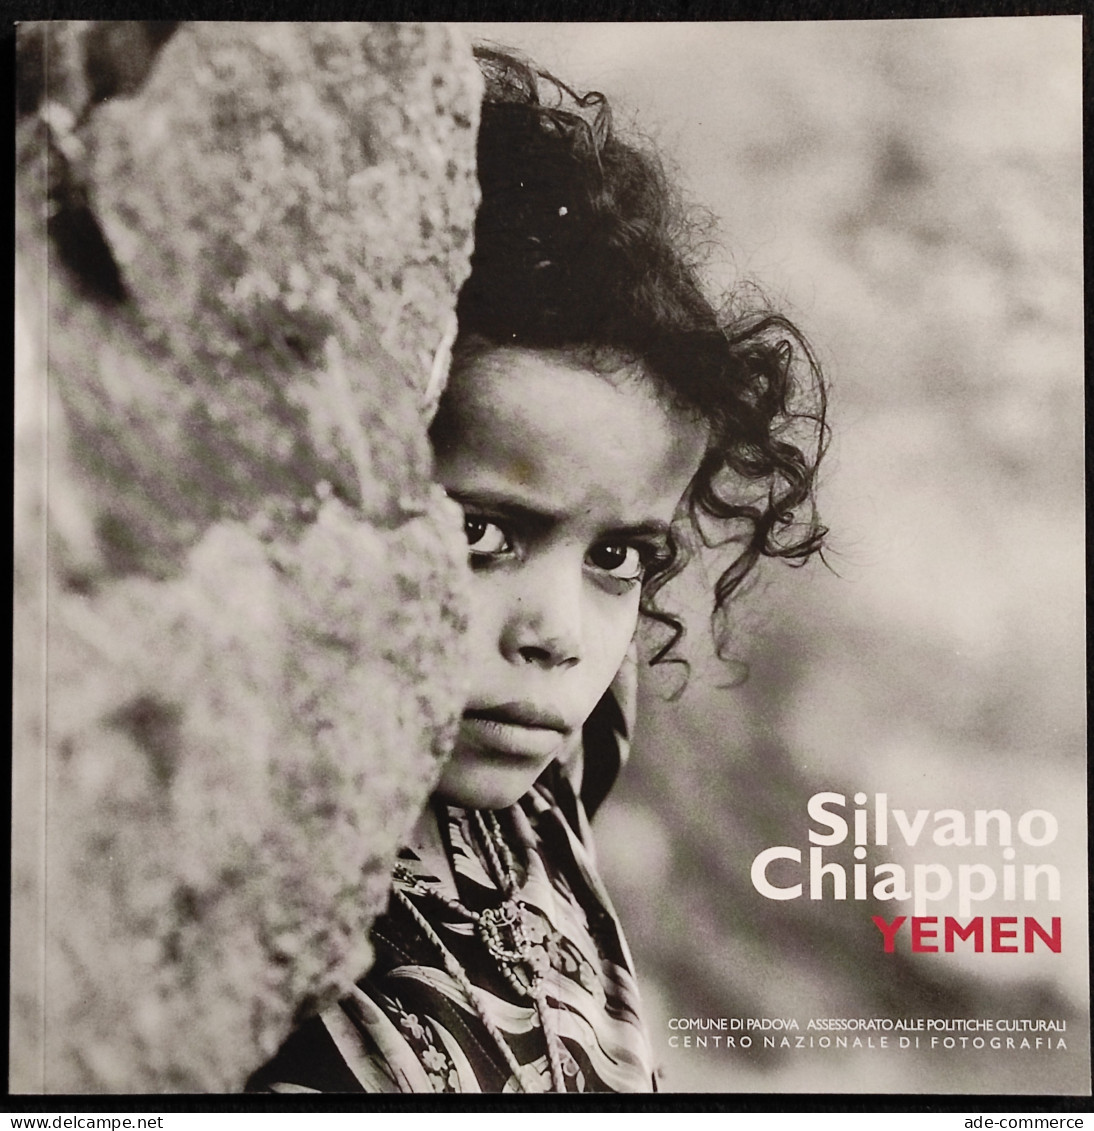 Silvano Chiappin - Yemen - E. Gusella - 2006 - Fotografia - Foto